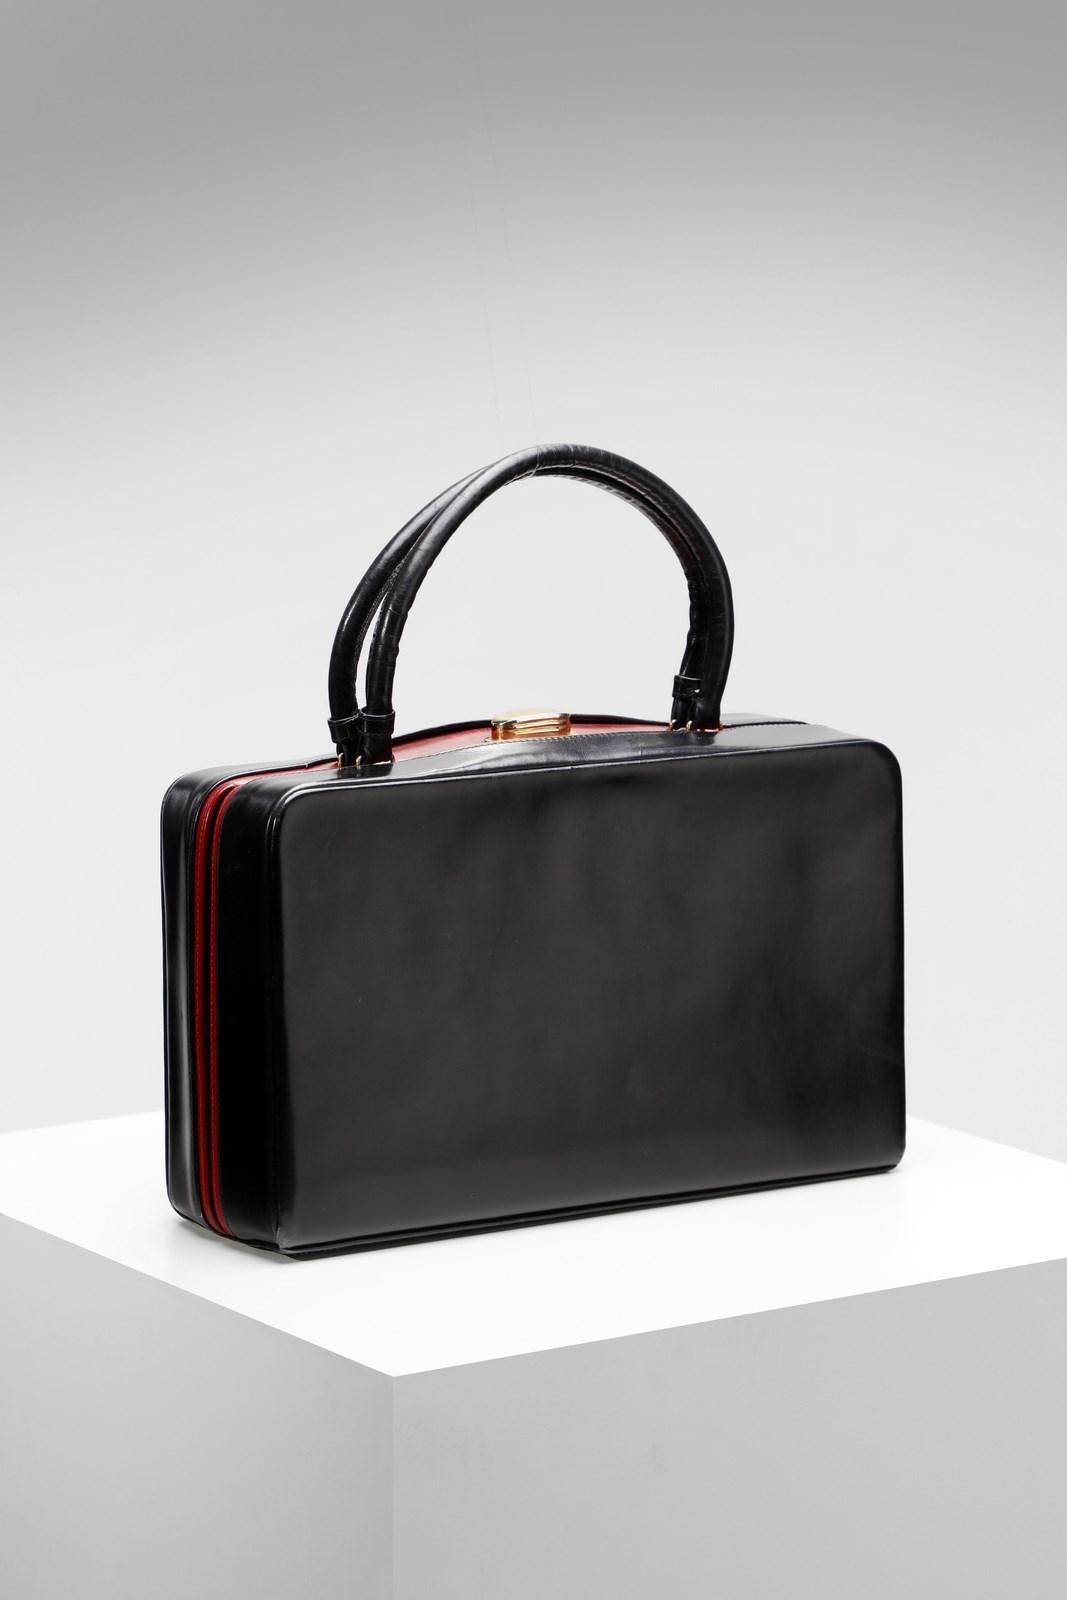 Elegante, feine Handtasche des großen italienischen Modehauses Gucci aus den 1950/60er Jahren. Bei dem abgebildeten Modell handelt es sich um eine kleine, starre Handtasche mit zwei Henkeln, die bauletto genannt wird. Hergestellt aus schwarzem Leder